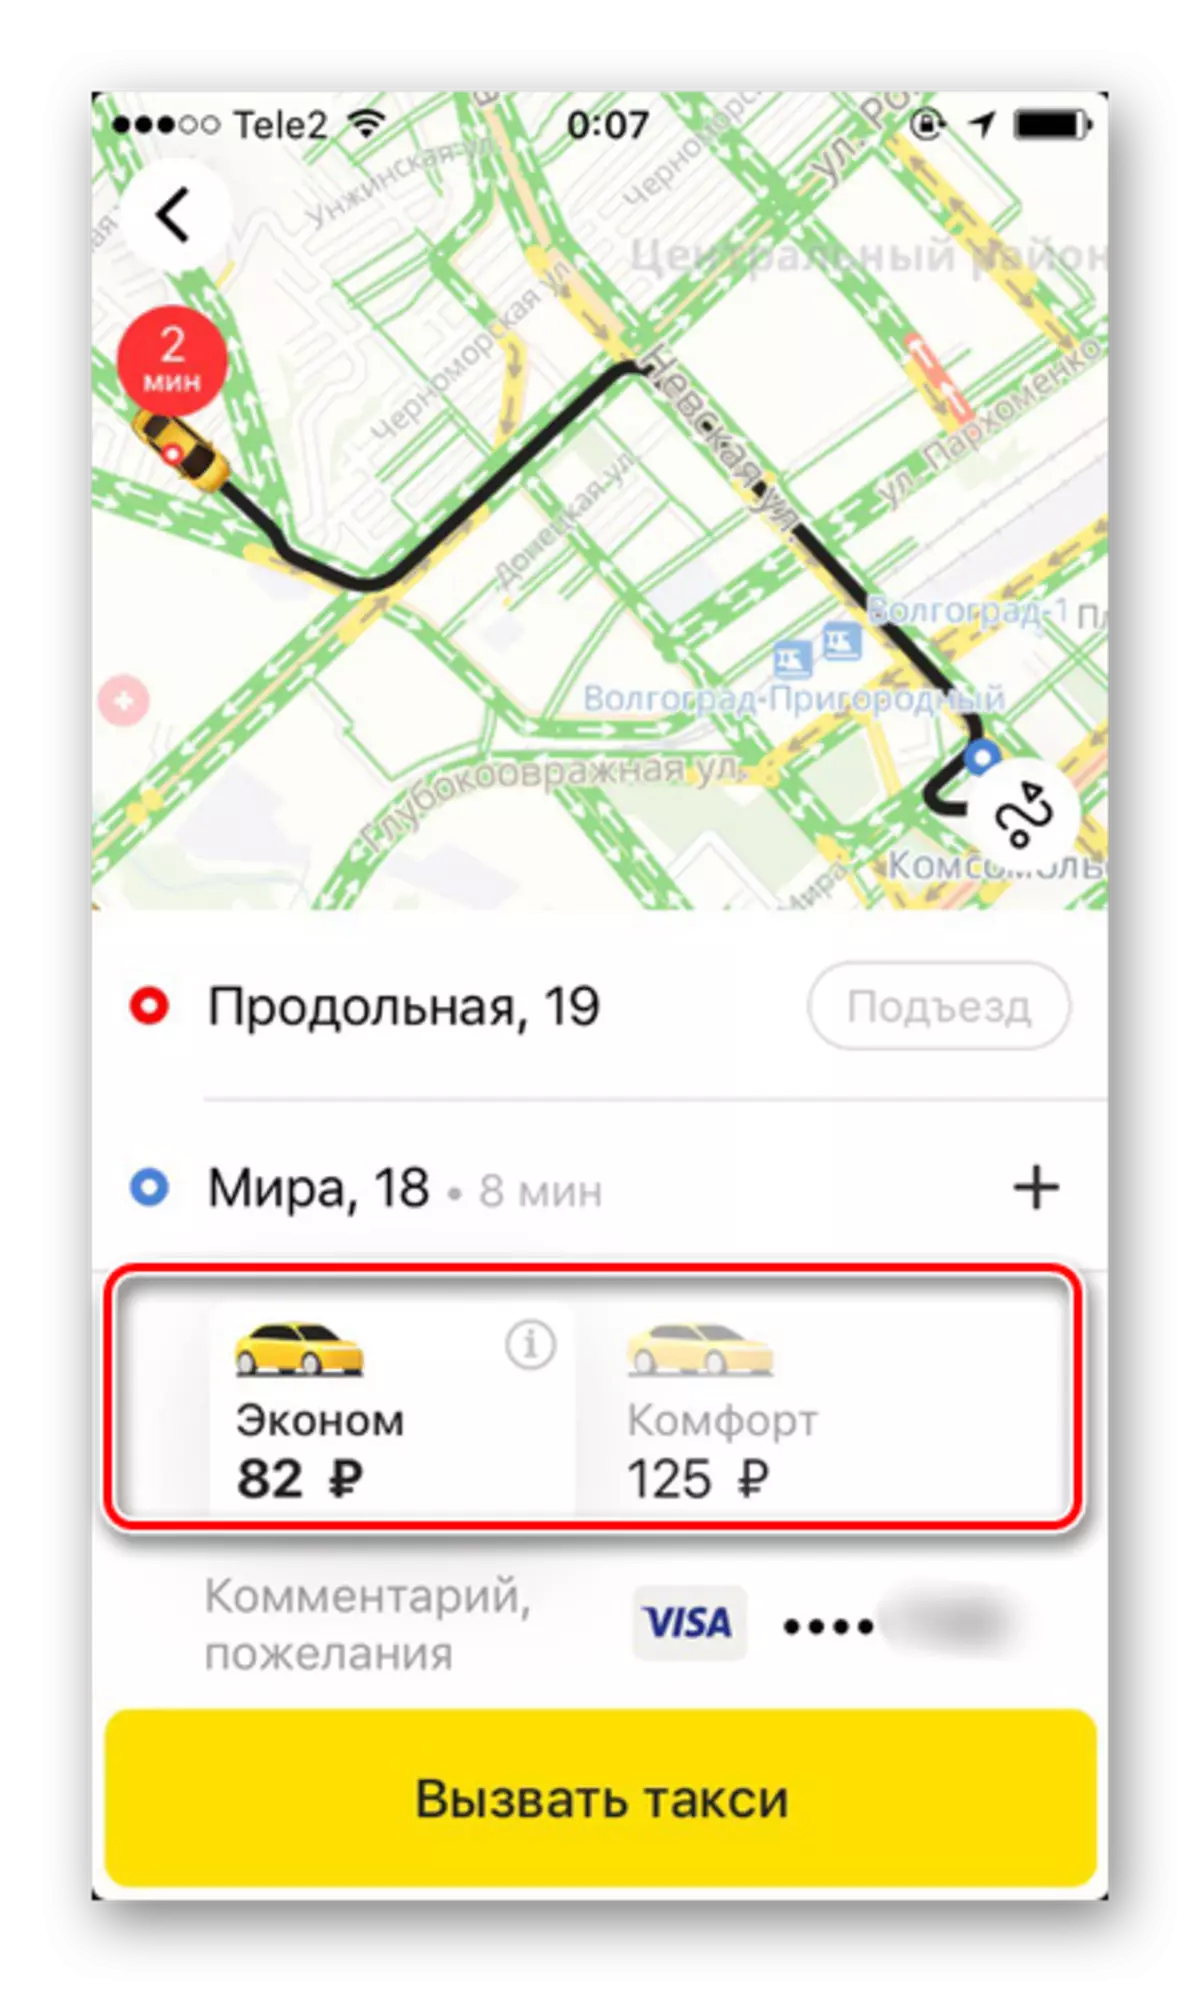 Tilgjengelige tariffer når du bestiller en taxi i Yandex.Taxi-applikasjonen på iPhone